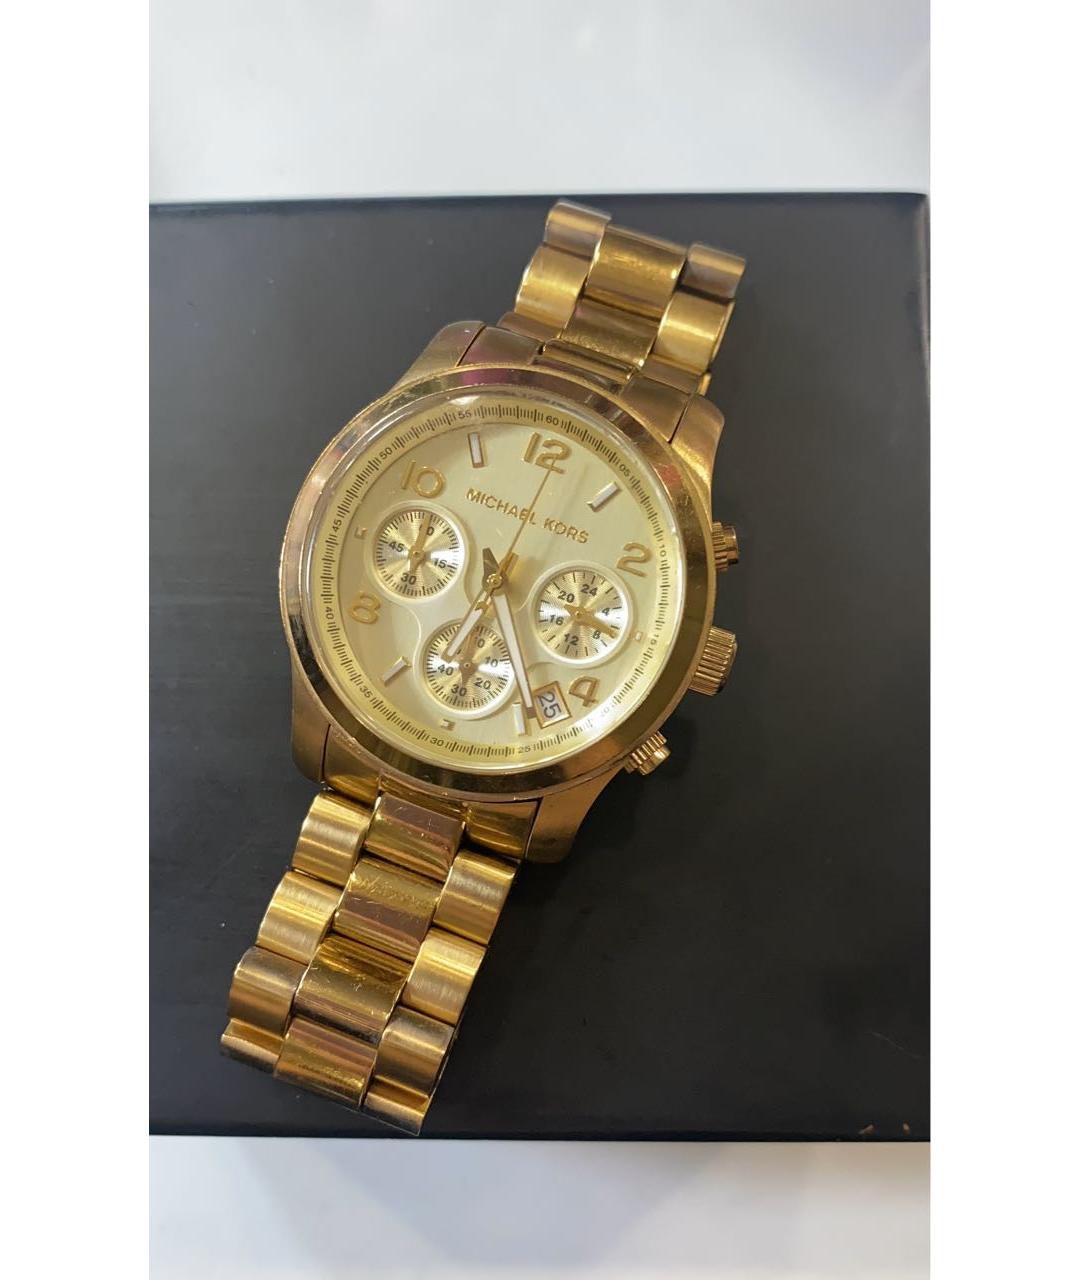 MICHAEL KORS Золотые позолоченные часы, фото 2